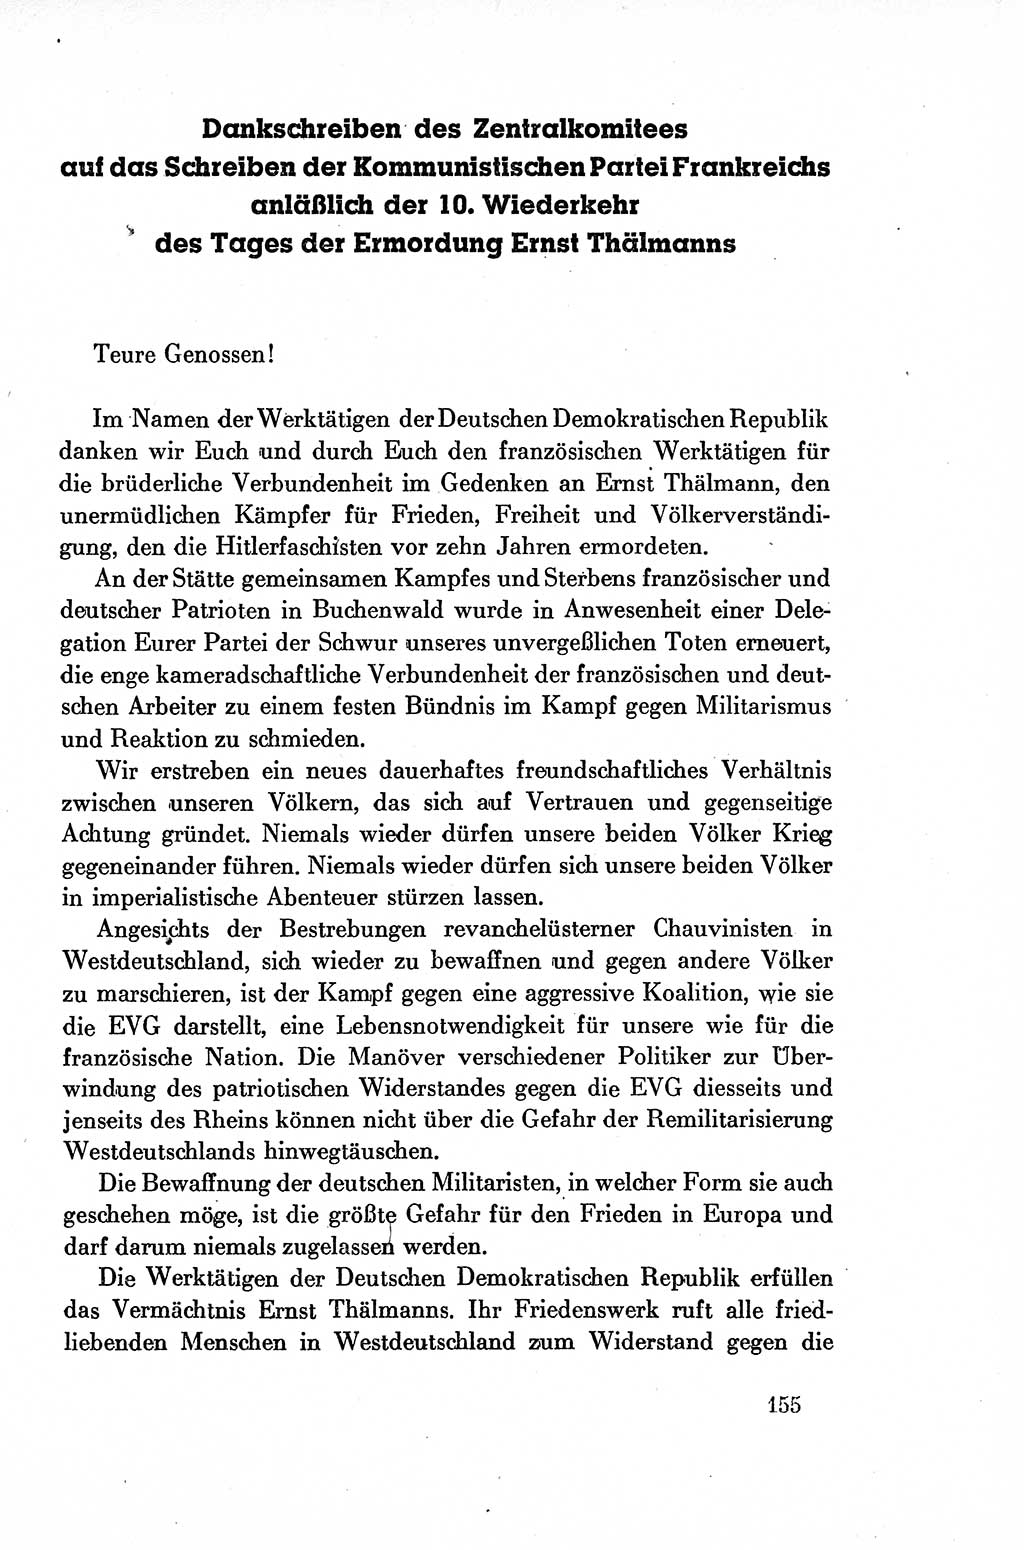 Dokumente der Sozialistischen Einheitspartei Deutschlands (SED) [Deutsche Demokratische Republik (DDR)] 1954-1955, Seite 155 (Dok. SED DDR 1954-1955, S. 155)